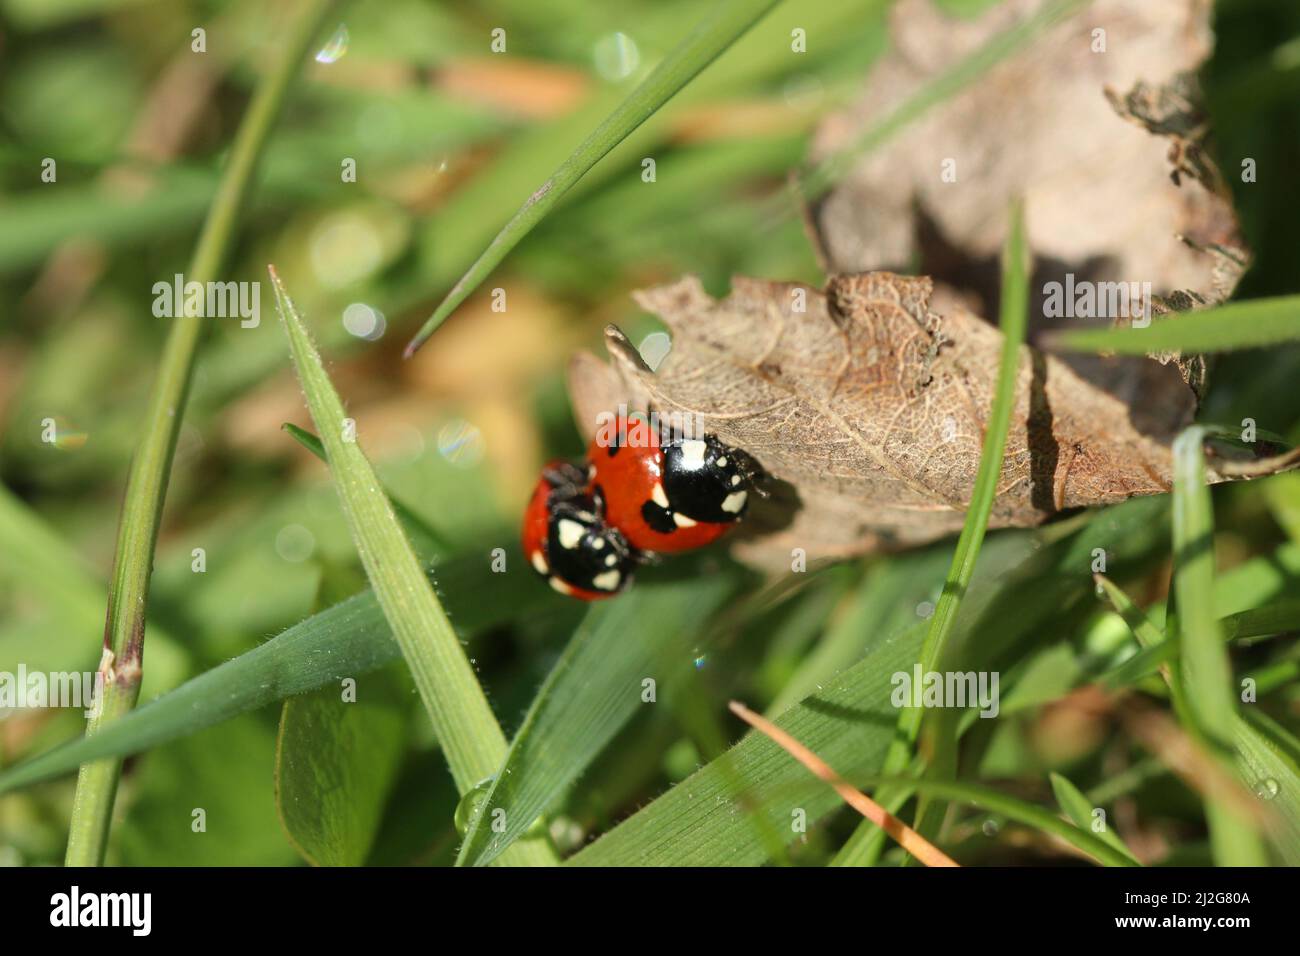 Una foto di un ladybug insieme ad un altro ladybug, scattata a Salford al Peel Park. Scattata con un obiettivo macro. Foto Stock